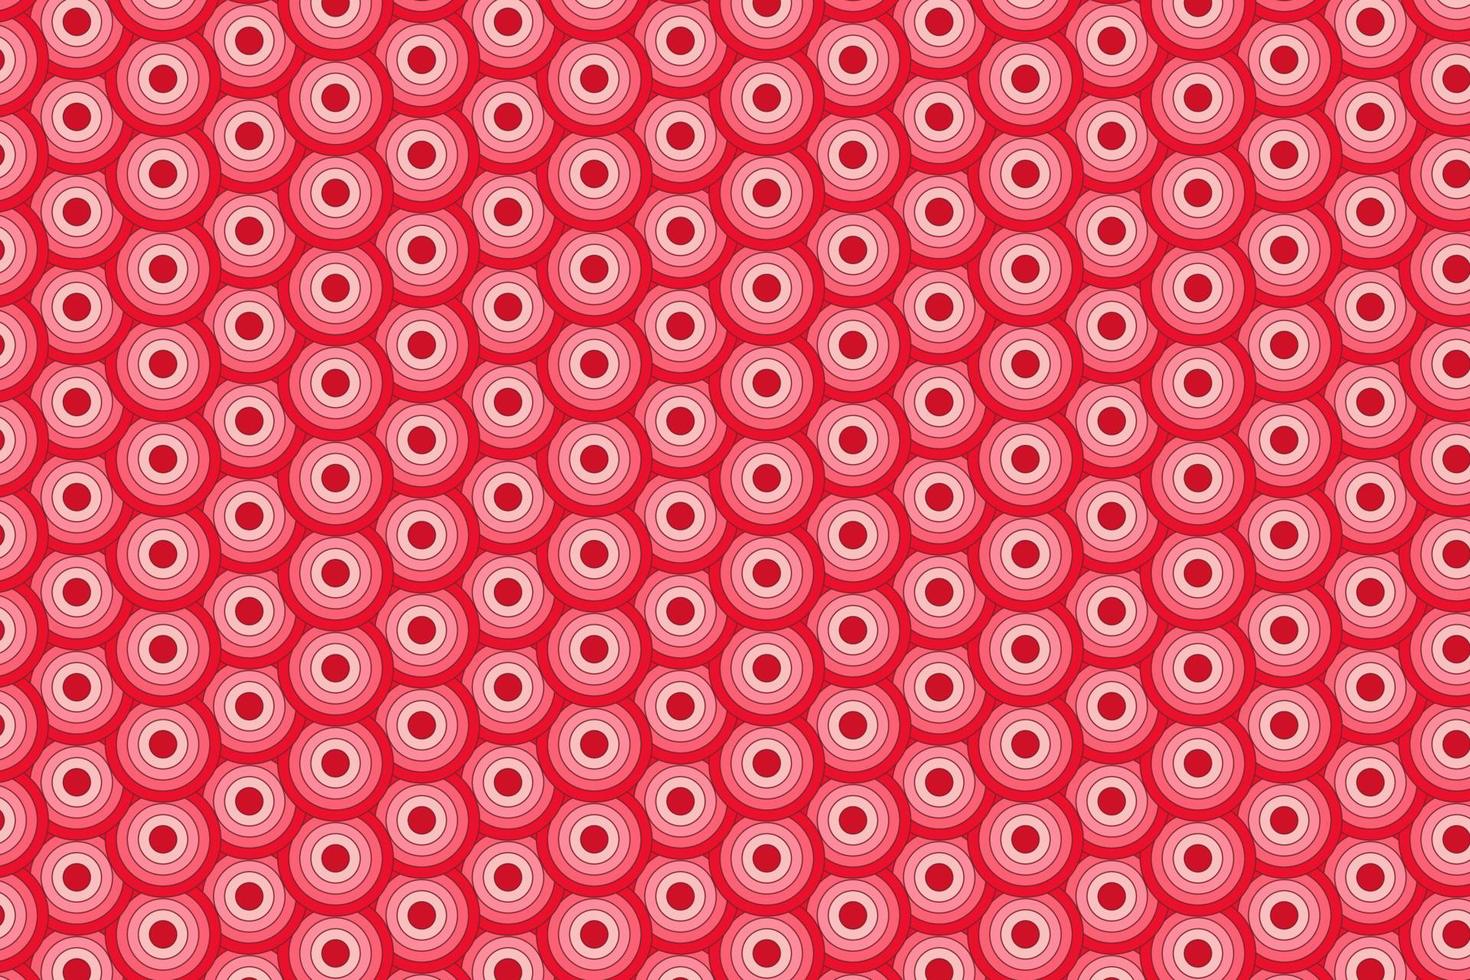 padrão com elementos geométricos em fundo gradiente abstrato de tons vermelhos vetor